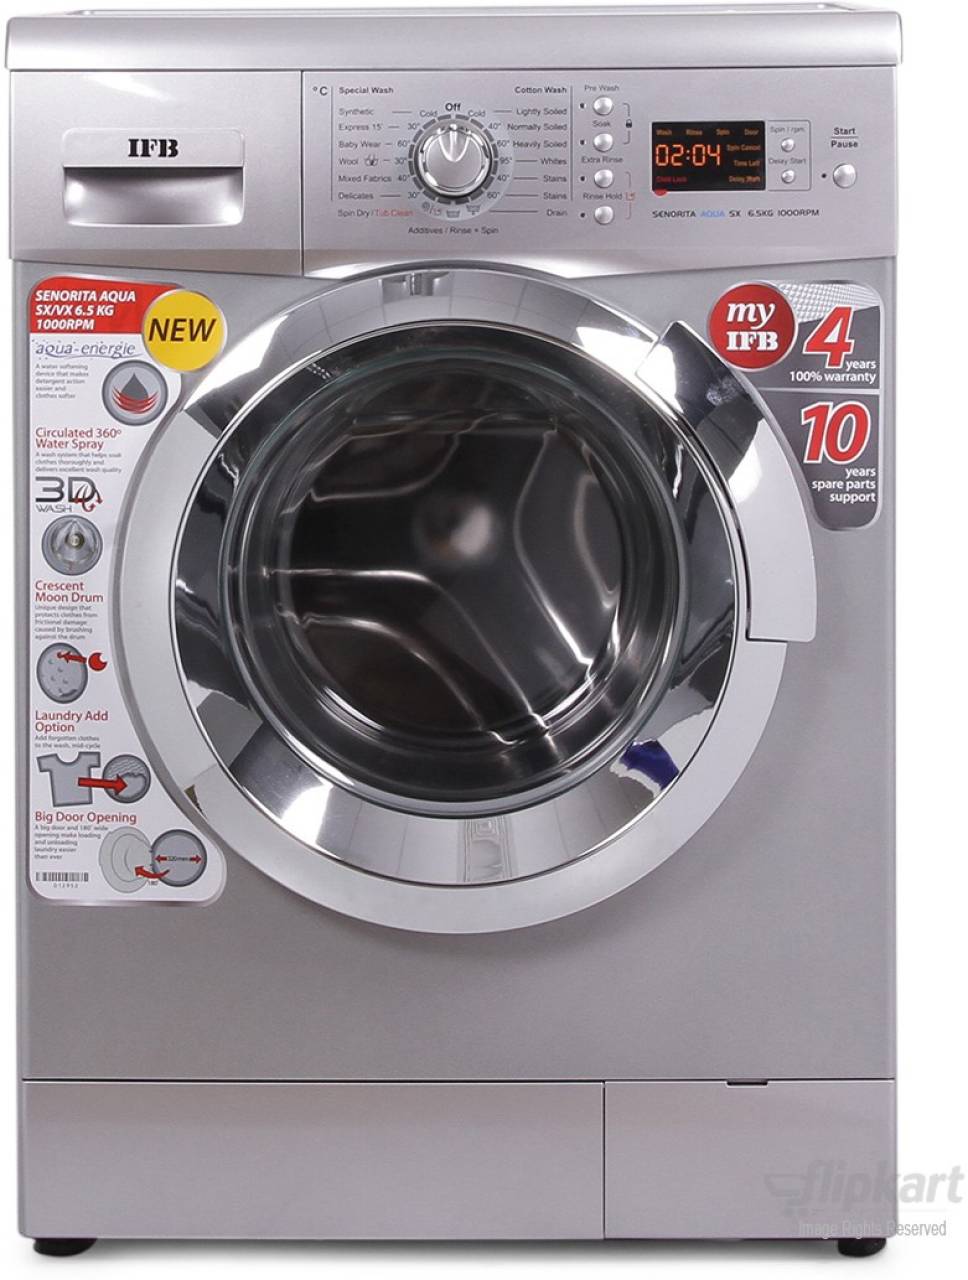 Ifb Senator Washing Machine User Manual